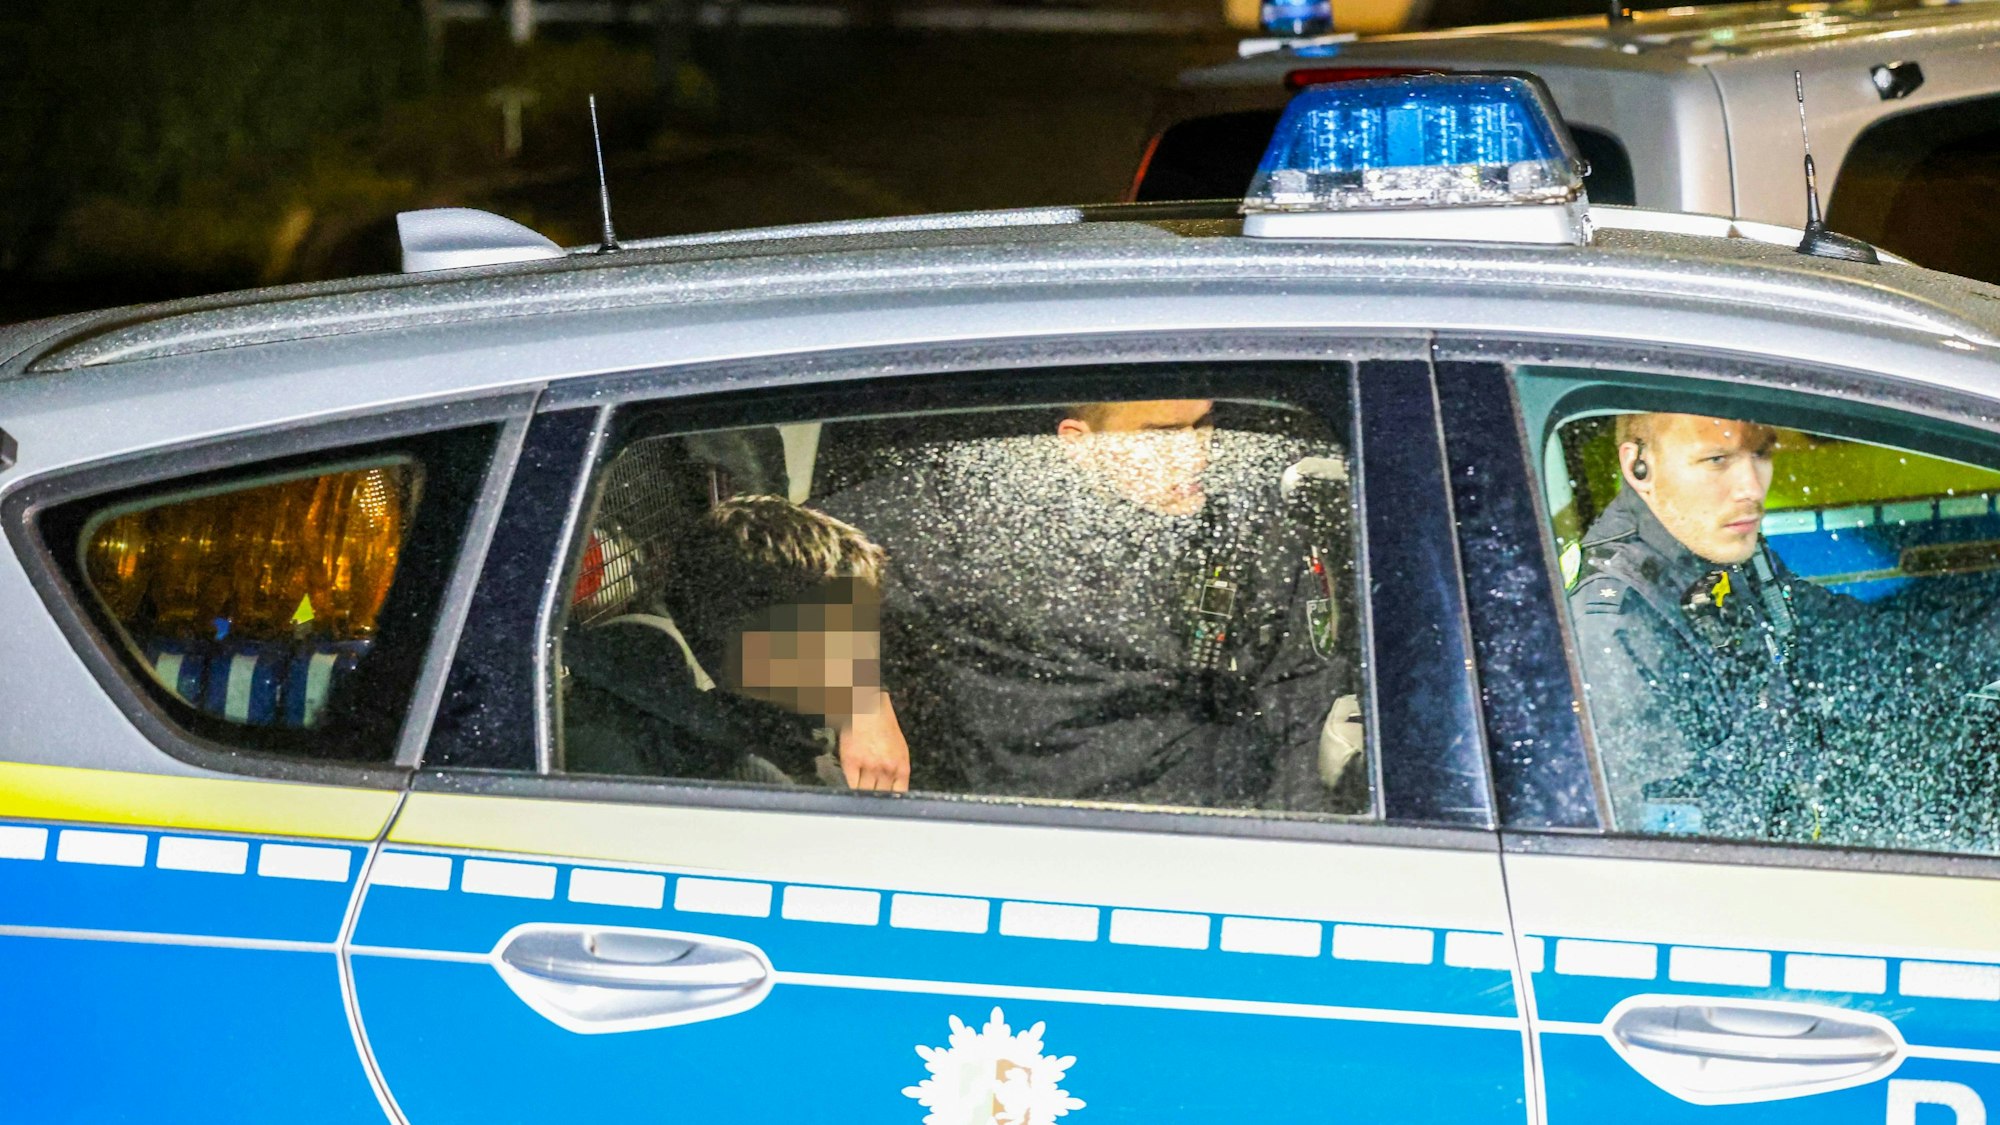 Ein Kind, dessen Gesicht verpixelt ist, sitzt auf dem Rücksitz eines Polizeiwagens.